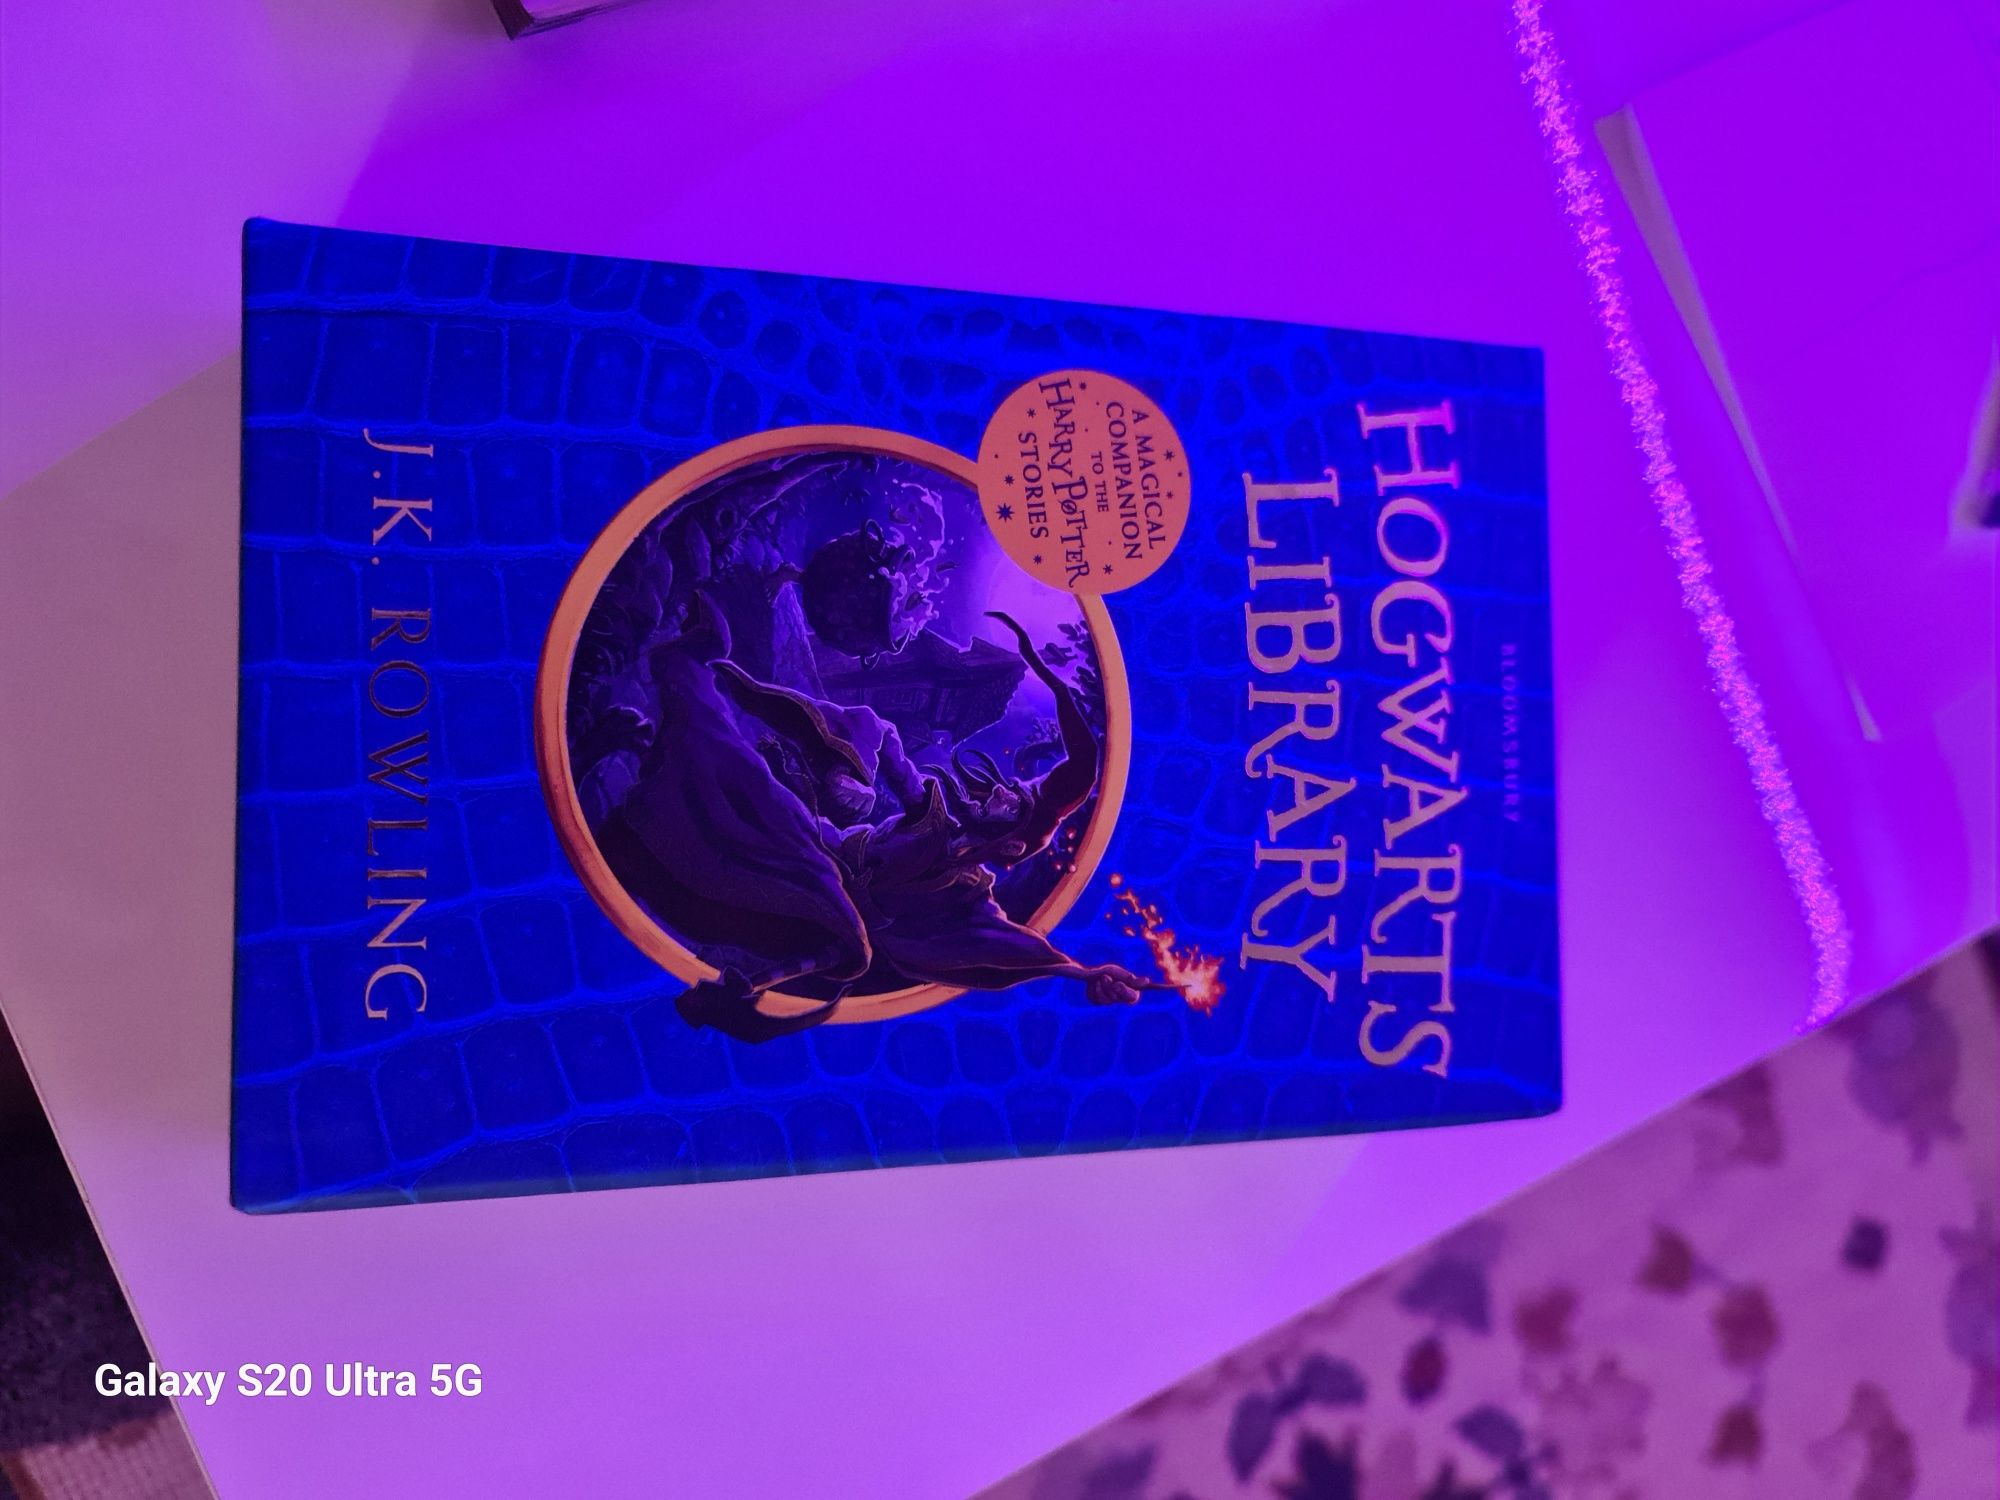 Coleção completa Harry Potter Stories Hogwarts library box set